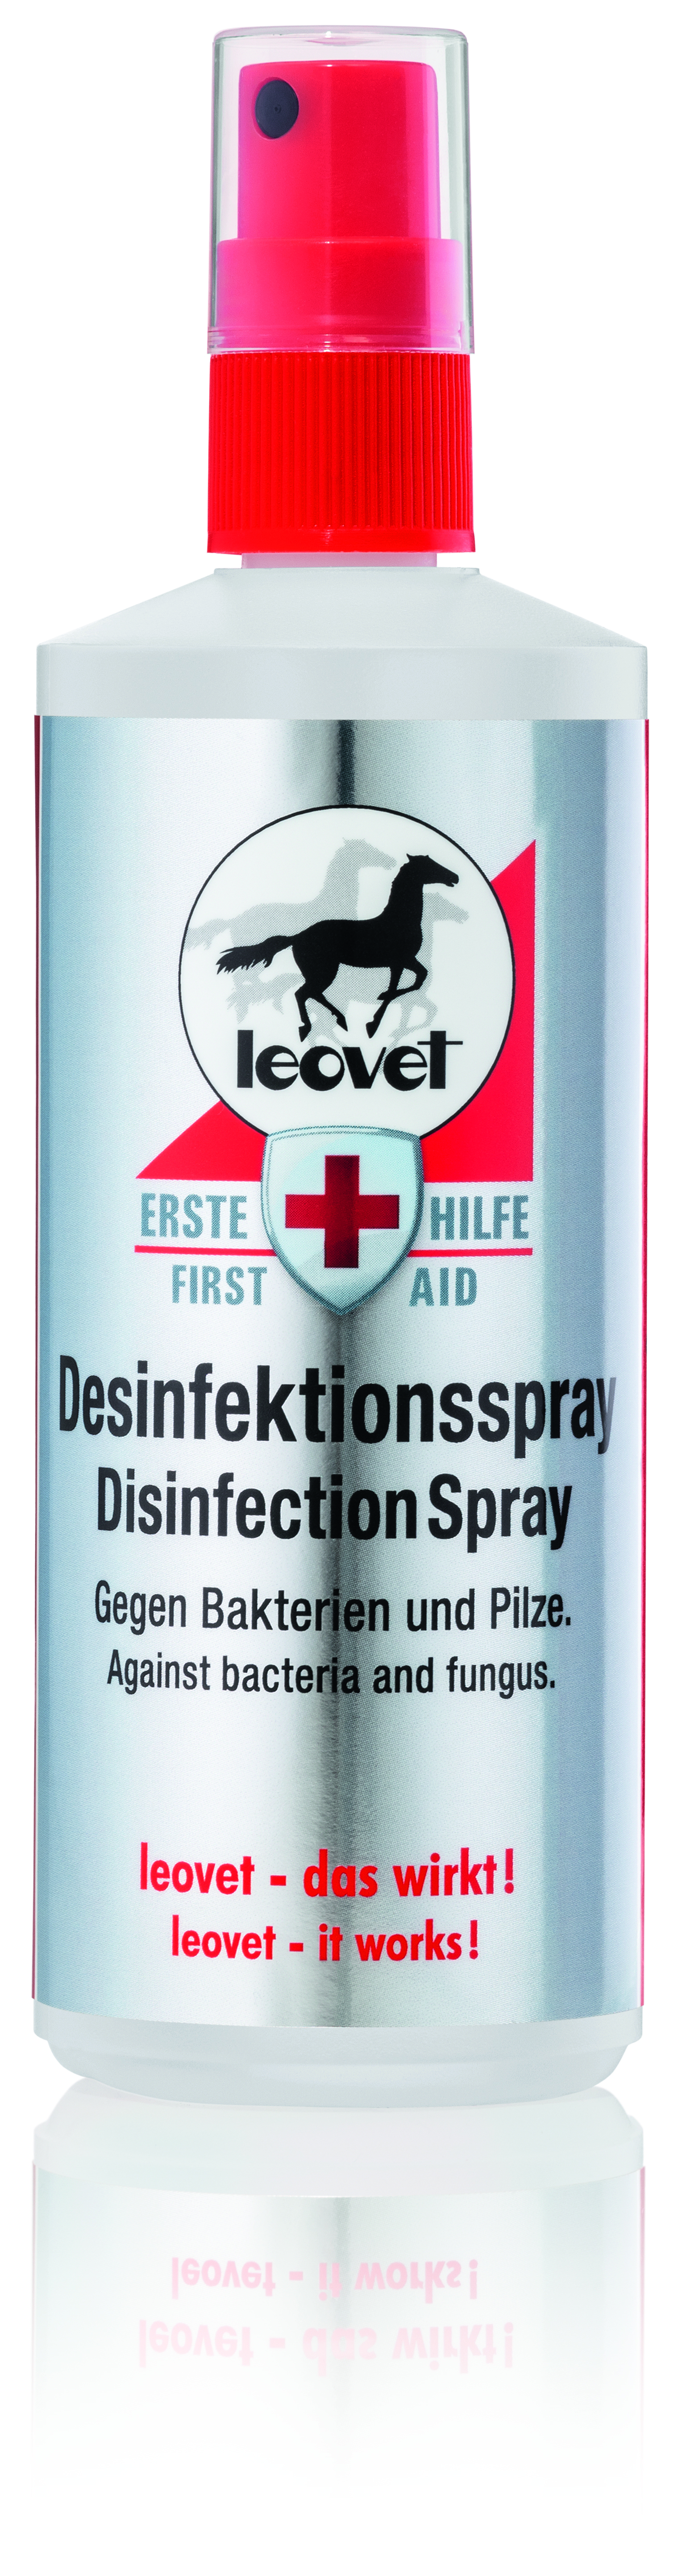 Erste Hilfe Desinfektionsspray